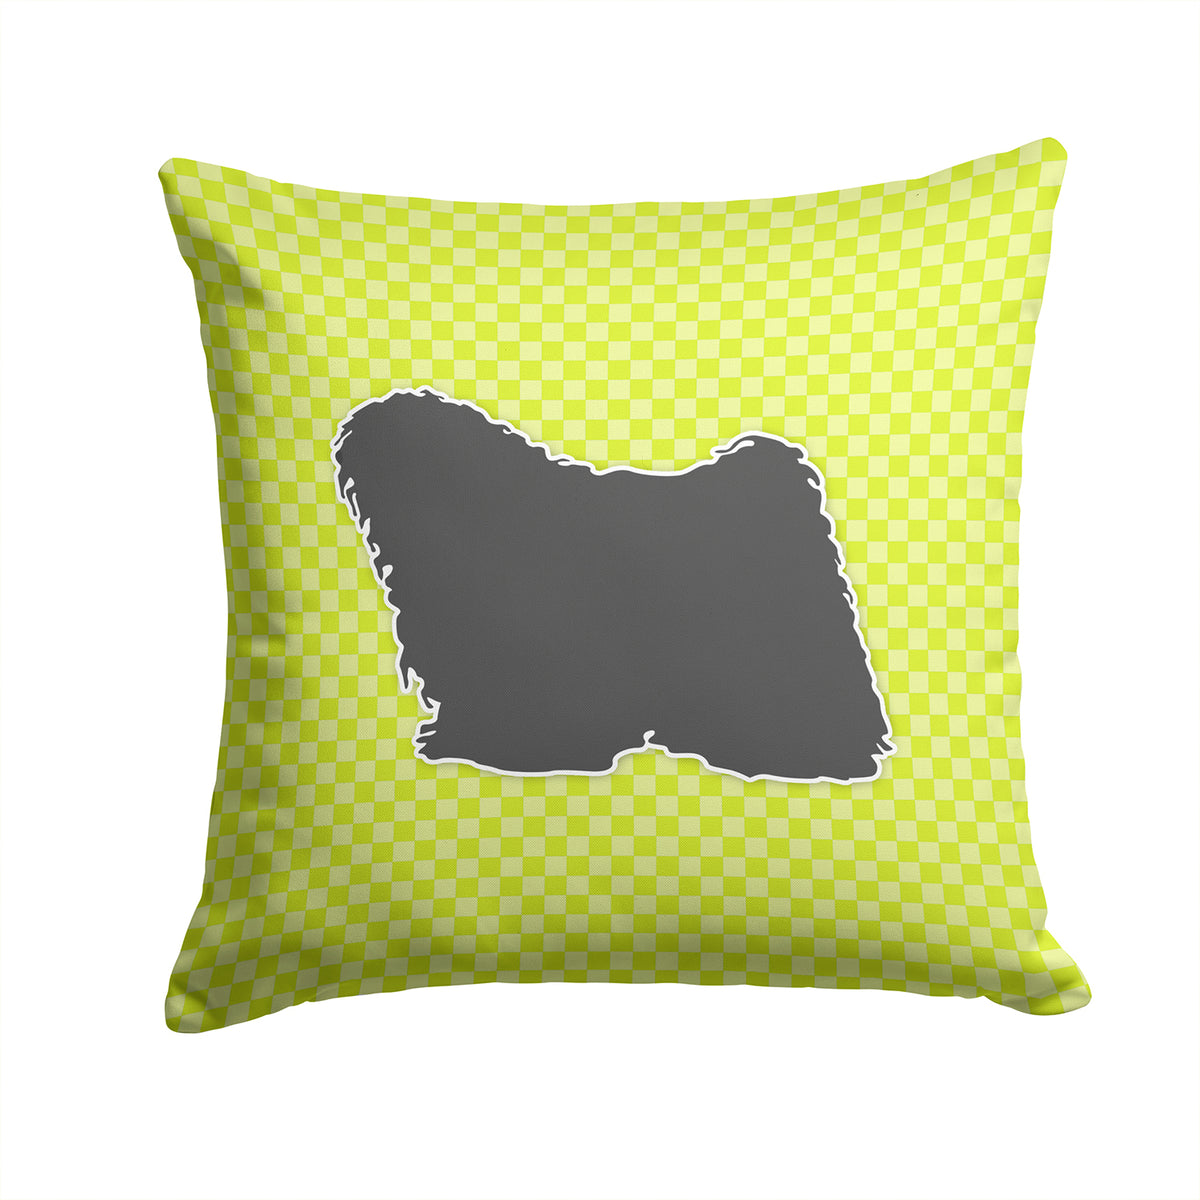 Puli Checkerboard Green Fabric Decorative Pillow BB3863PW1414 - the-store.com